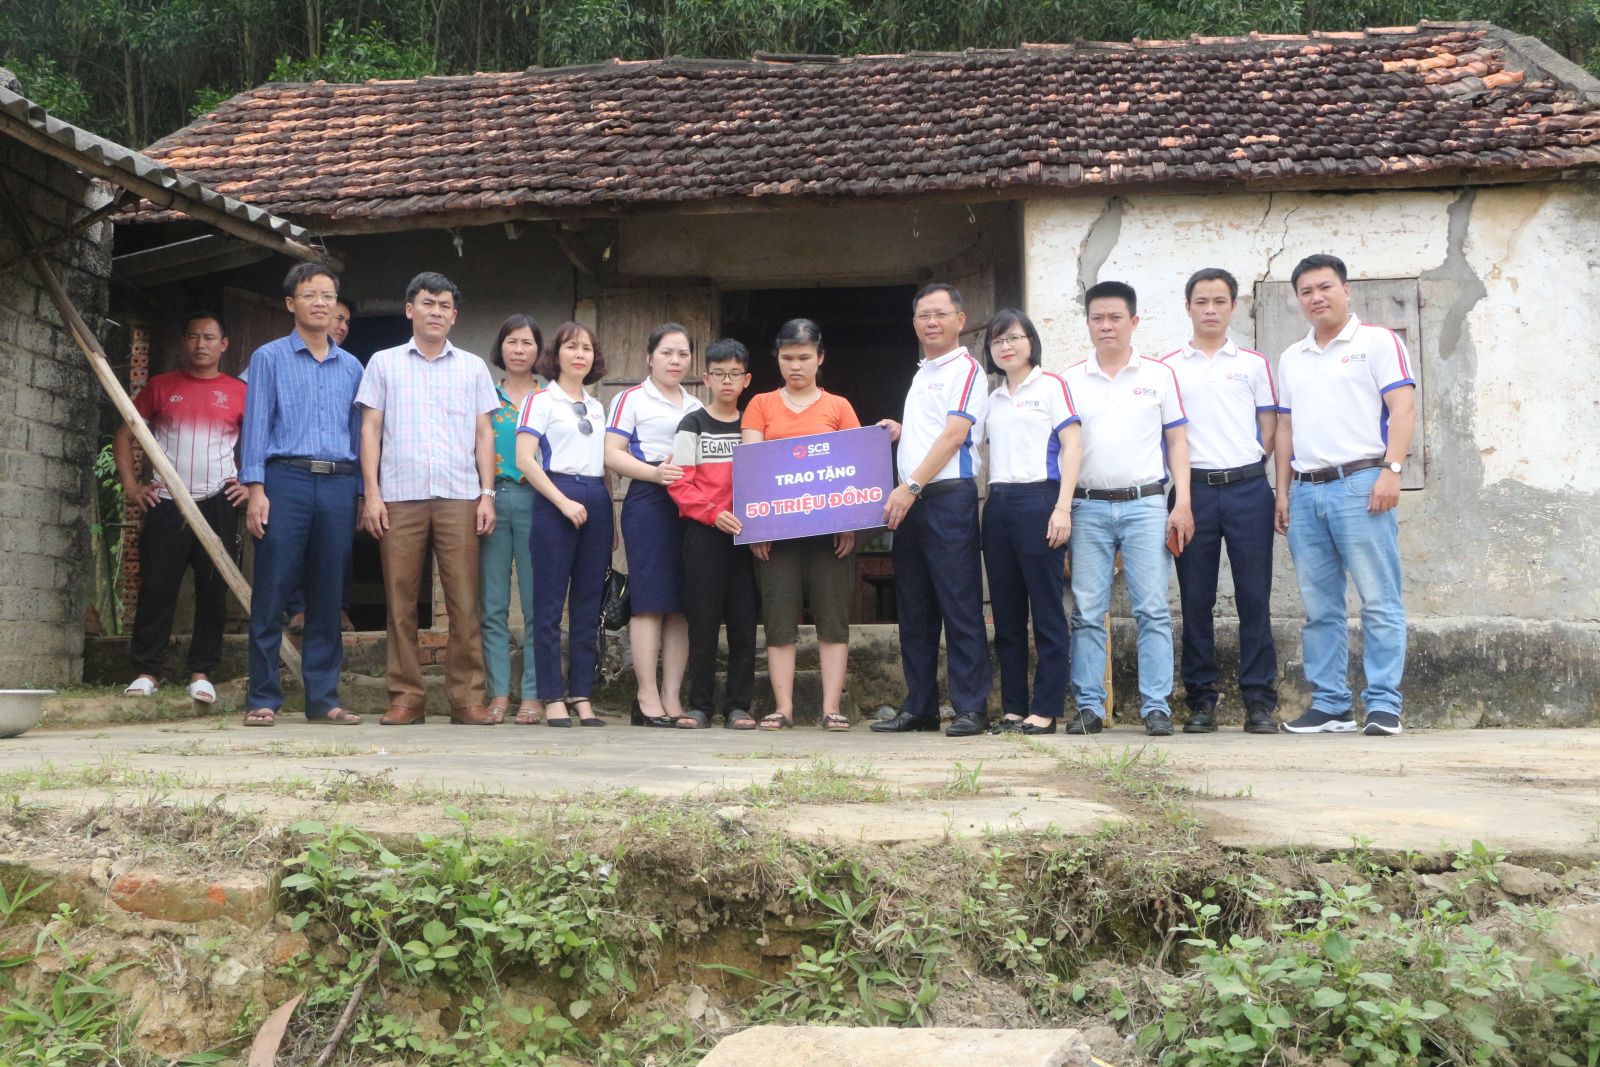 Đại diện SCB Nghệ An trao tặng 50 triệu đồng cho gia đình Chị Nguyễn Thị Tâm có hoàn cảnh đặc biệt khó khăn tại thôn Ngọc Liên, xã Kim Thành, huyện Yên Thành, Nghệ An.